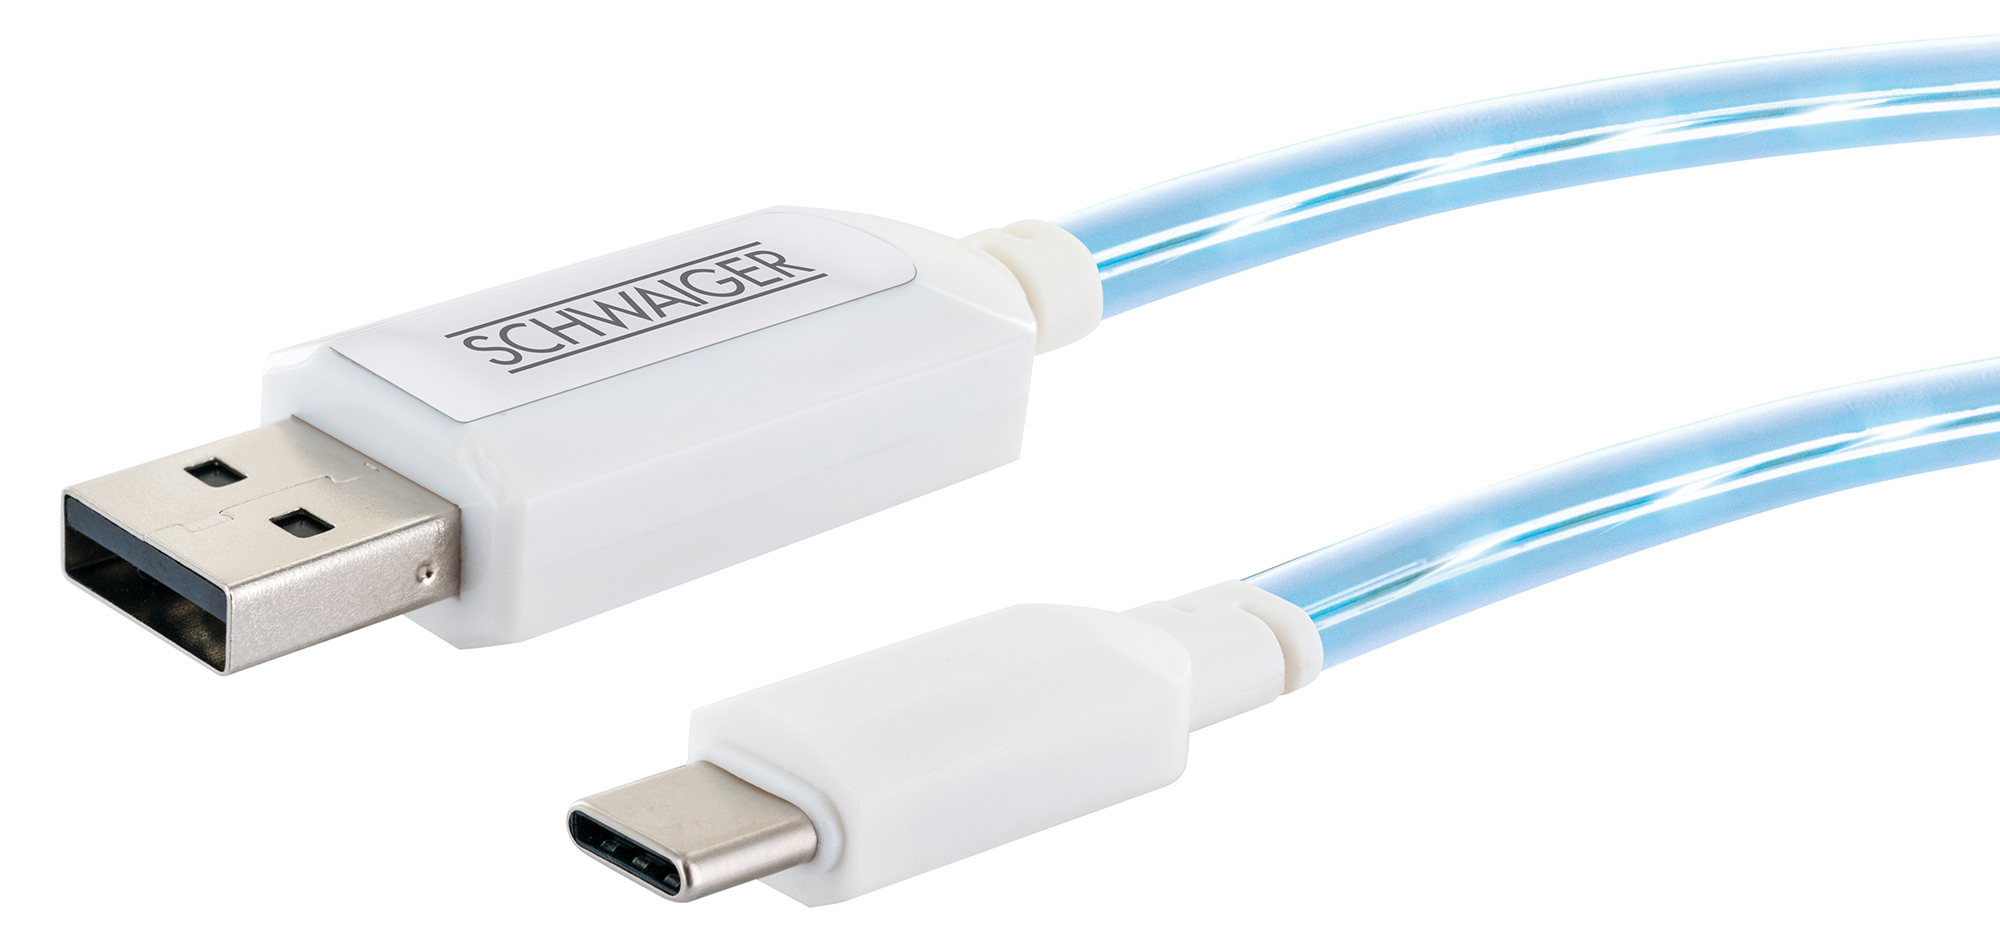 USB 2.0 m, SCHWAIGER (Type USB 532-, zu 0,8 C) Stecker 3.1 Type A -LKL100C C Sync Weiß Ladekabel, Stecker, & leuchtend